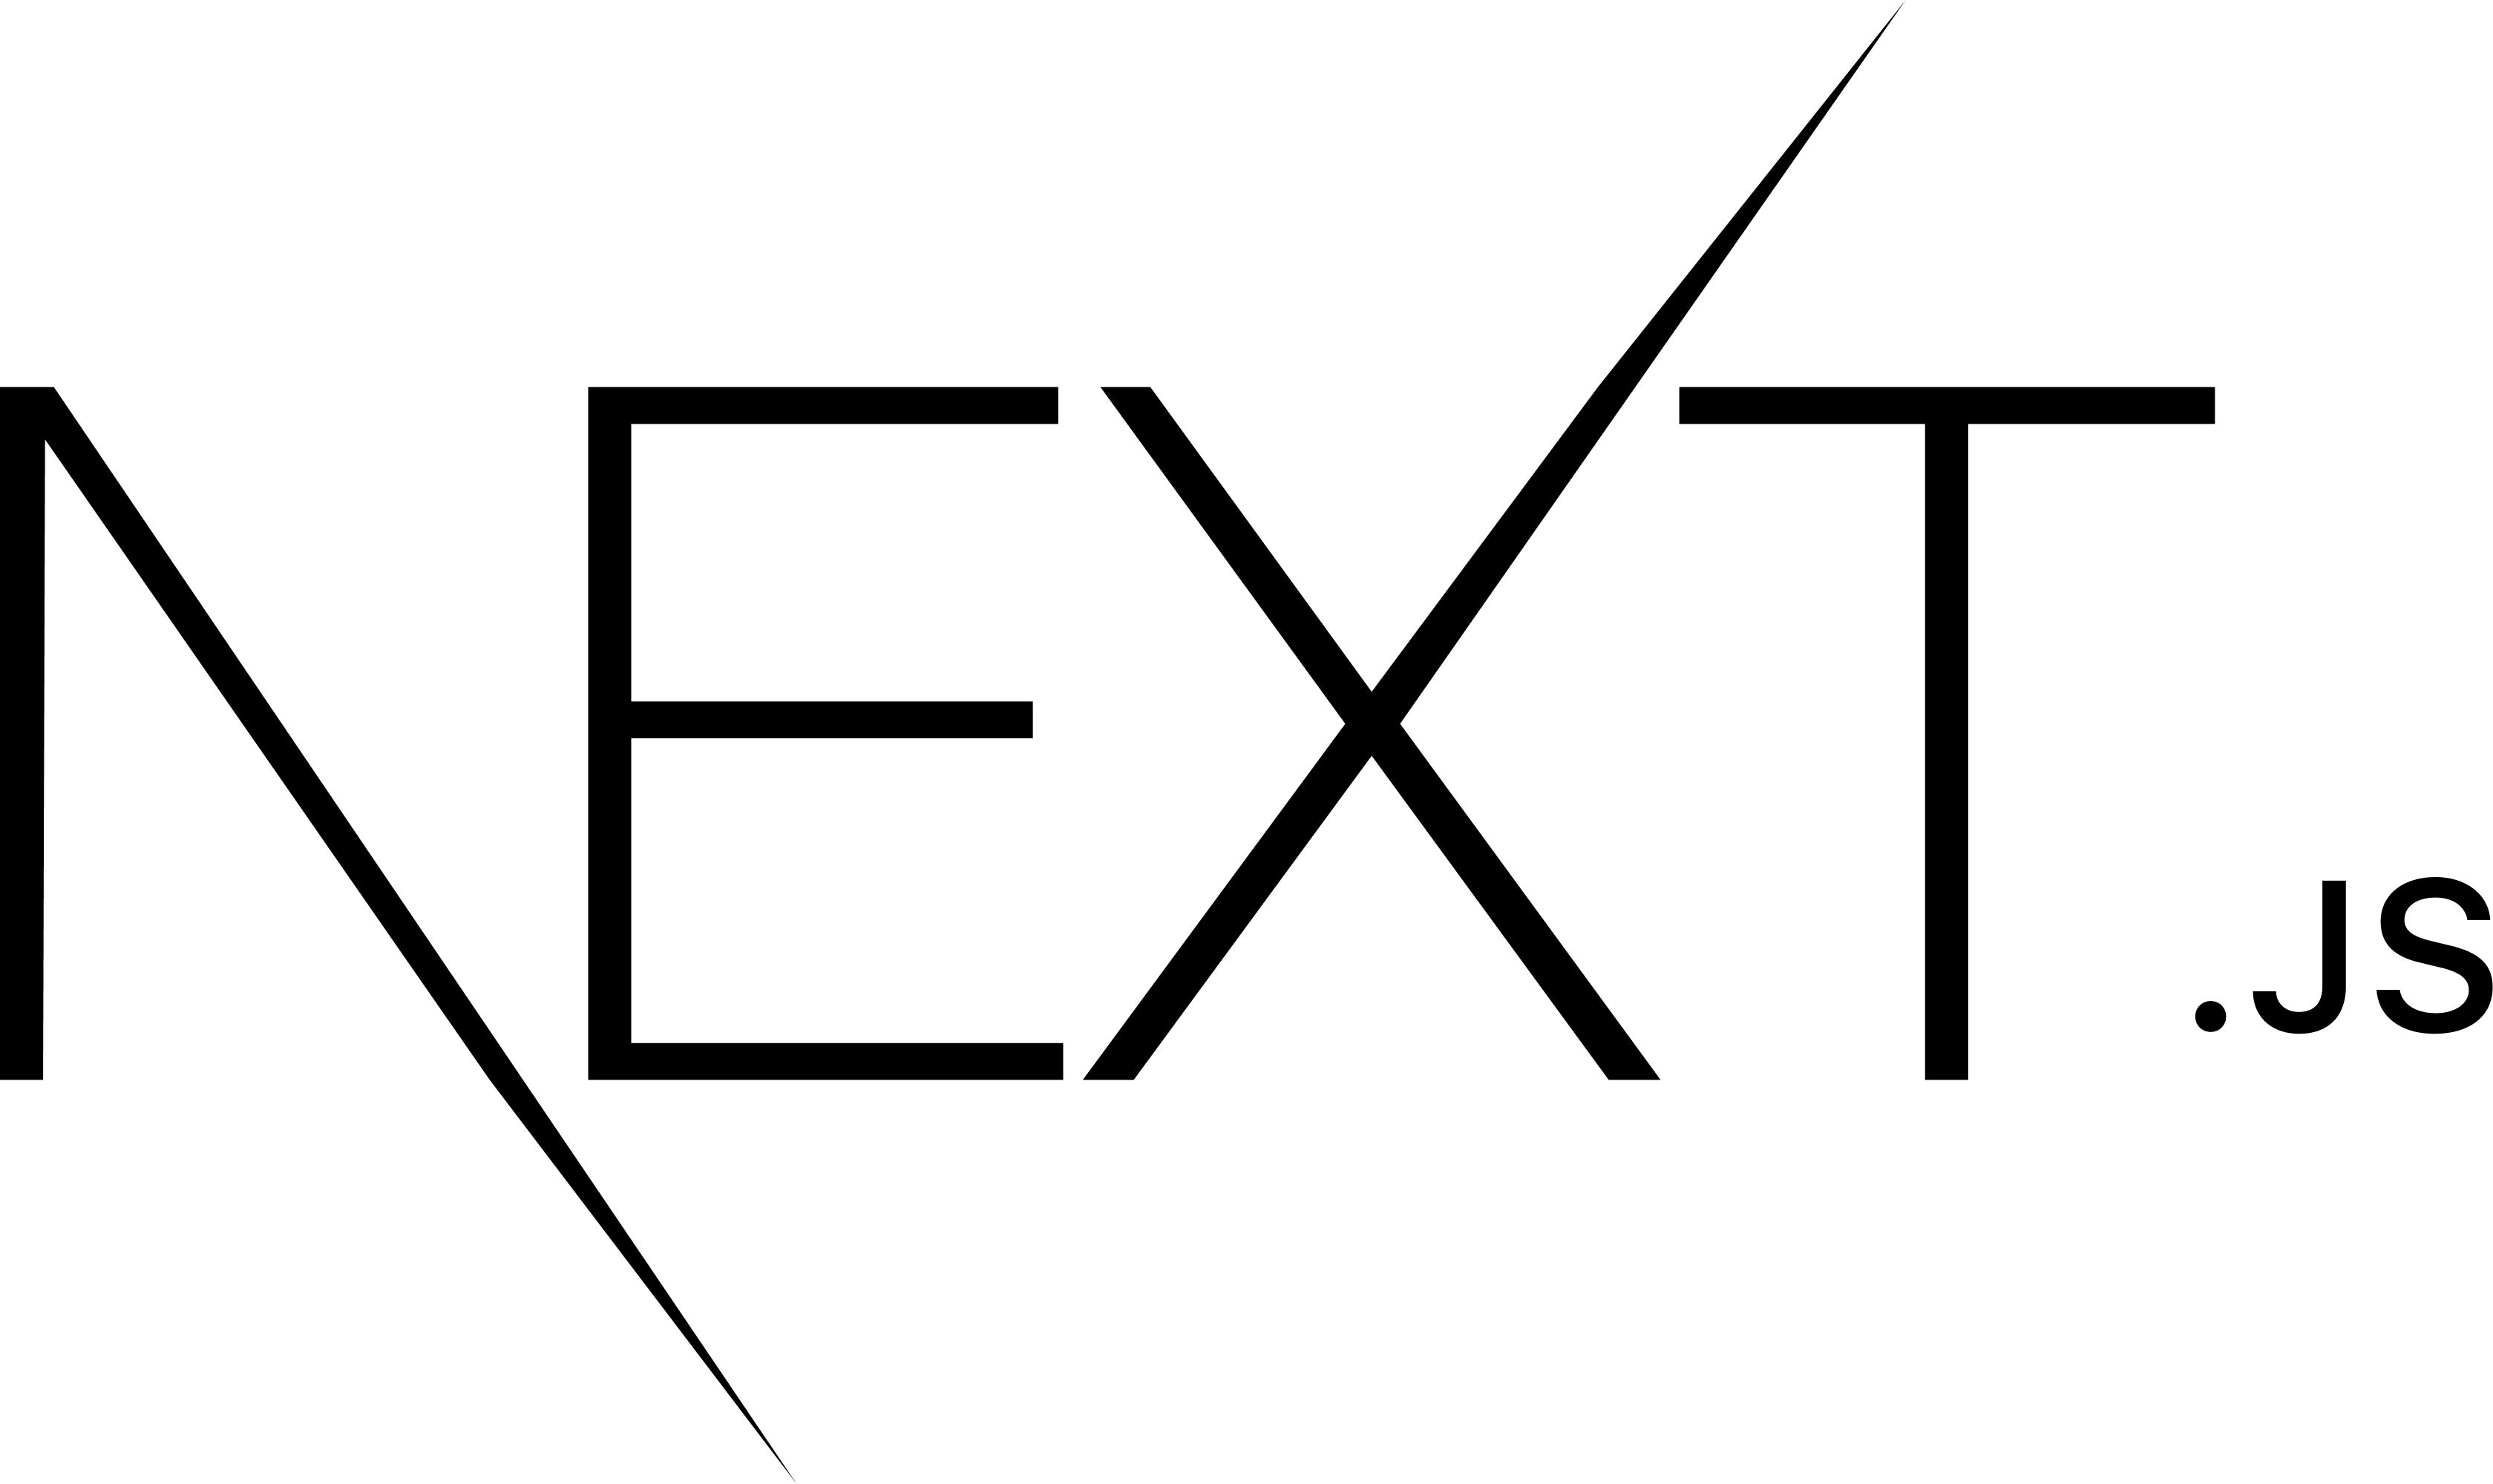 nextjs-logotype-dark.png